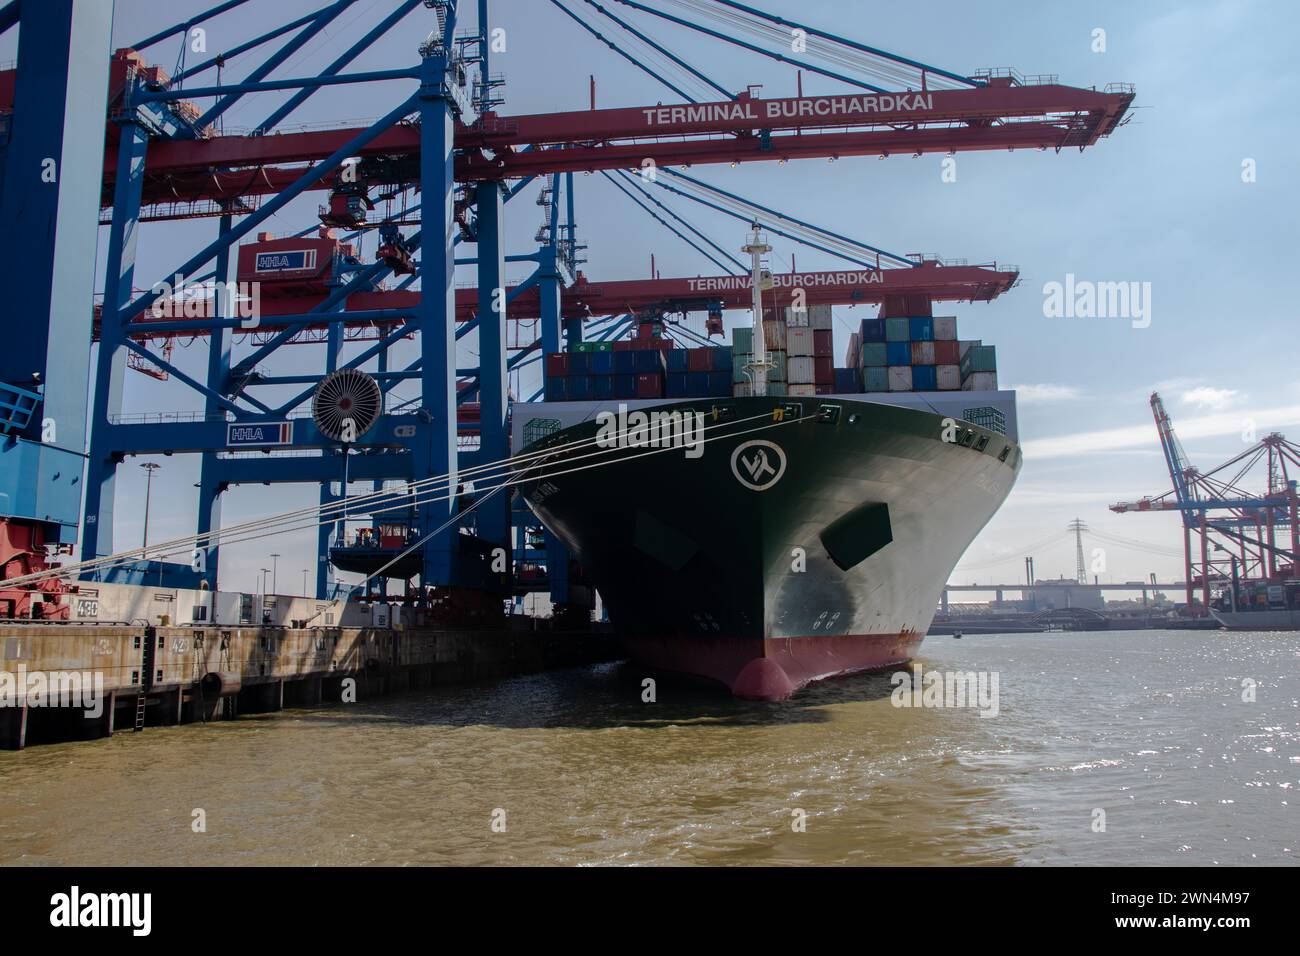 HHLA Containerterminal Eurogate in Burchardkai in Hamburg. Hafen von Hamburg. Transport Auf Dem Schiff. Hamburg, Deutschland Stockfoto